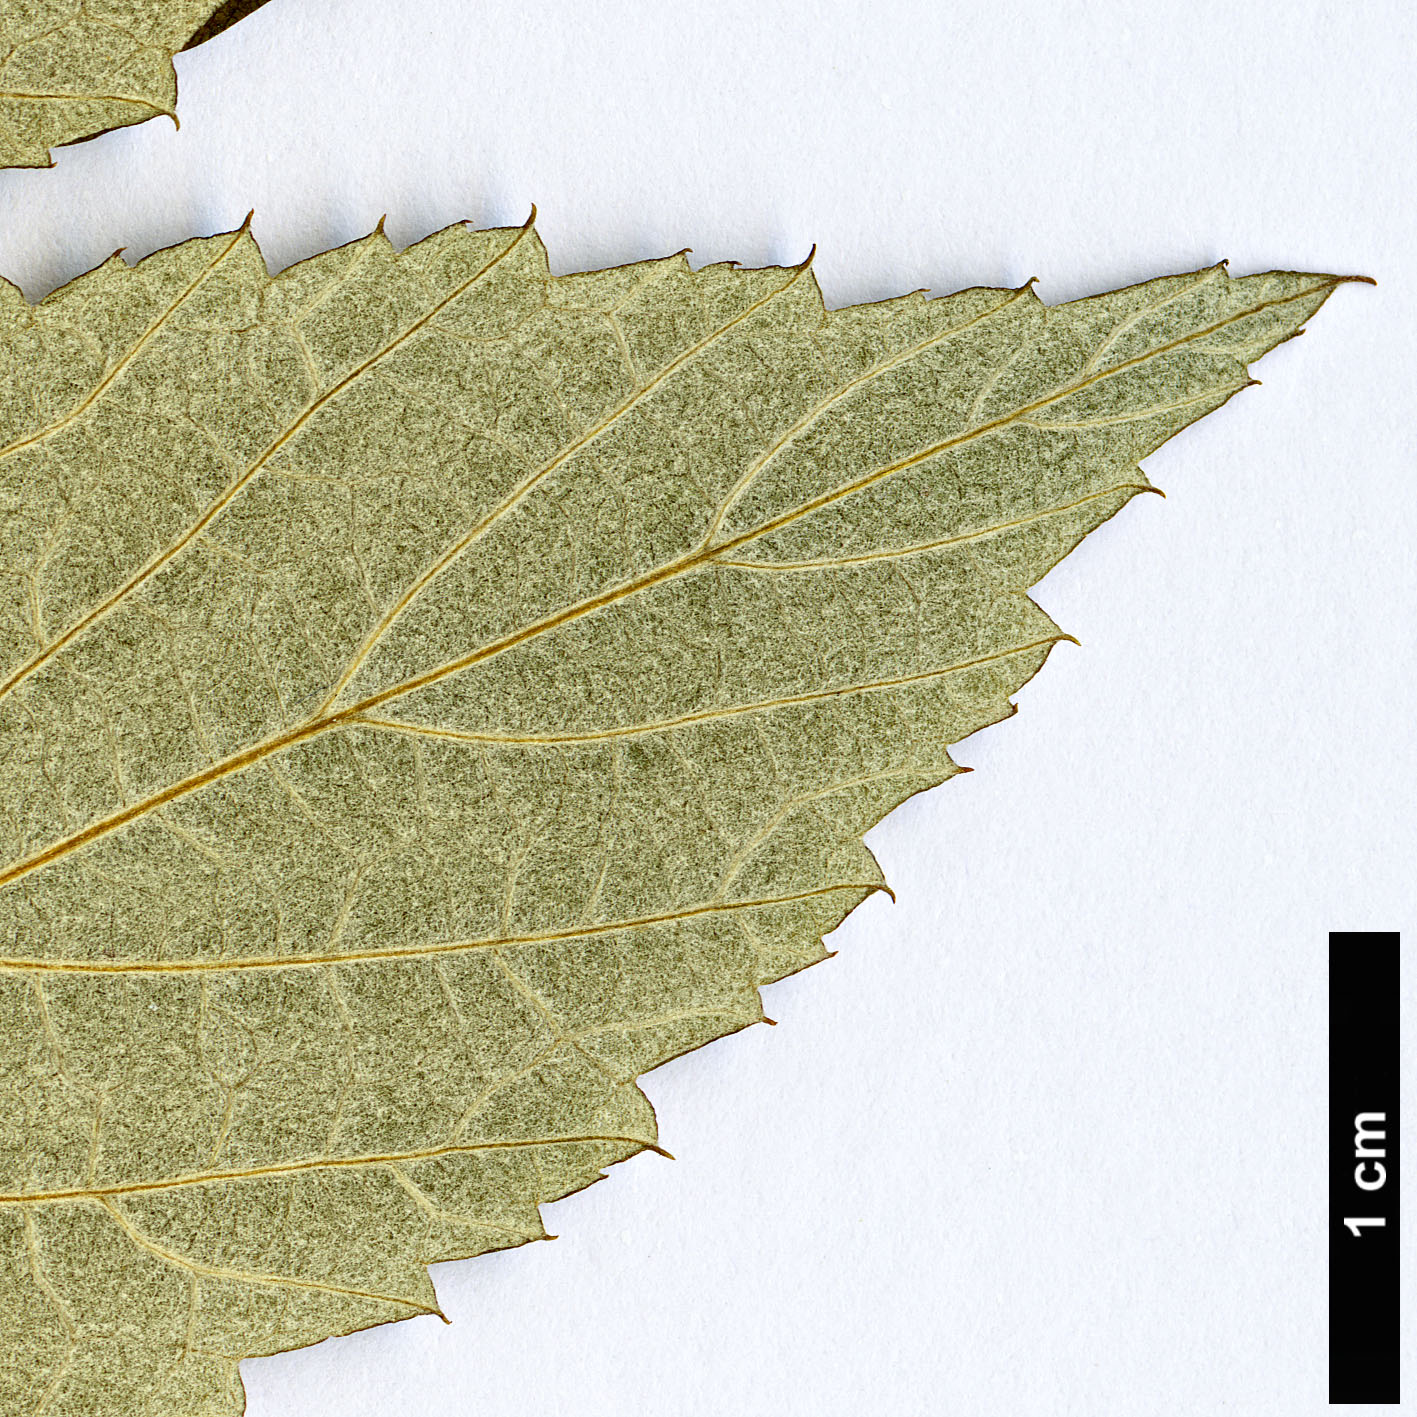 High resolution image: Family: Rosaceae - Genus: Rubus - Taxon: flosculosus